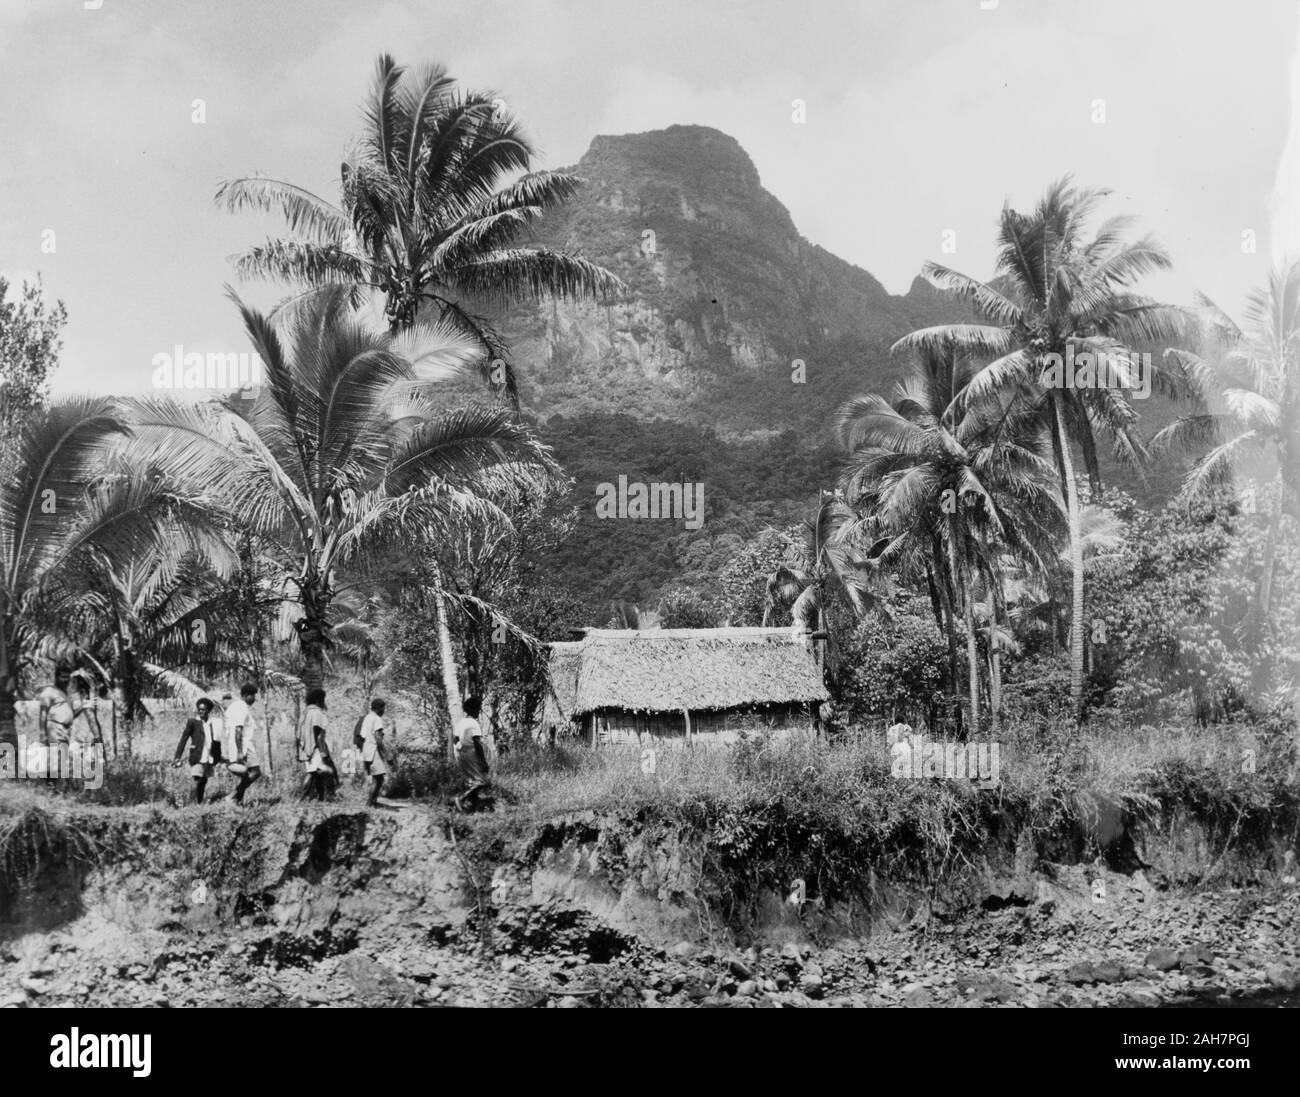 Fidji, de retour à la maison FijiA file de gens rentrer chez eux à leur 'traditionnelle fidjienne bures" (habitations), qui s'ouvrent sur un fond de montagnes et de palmiers. Sous-titre suivant : le retour à leur "Bure" après une fête, 1965. 2005/010/1/14/56. Banque D'Images